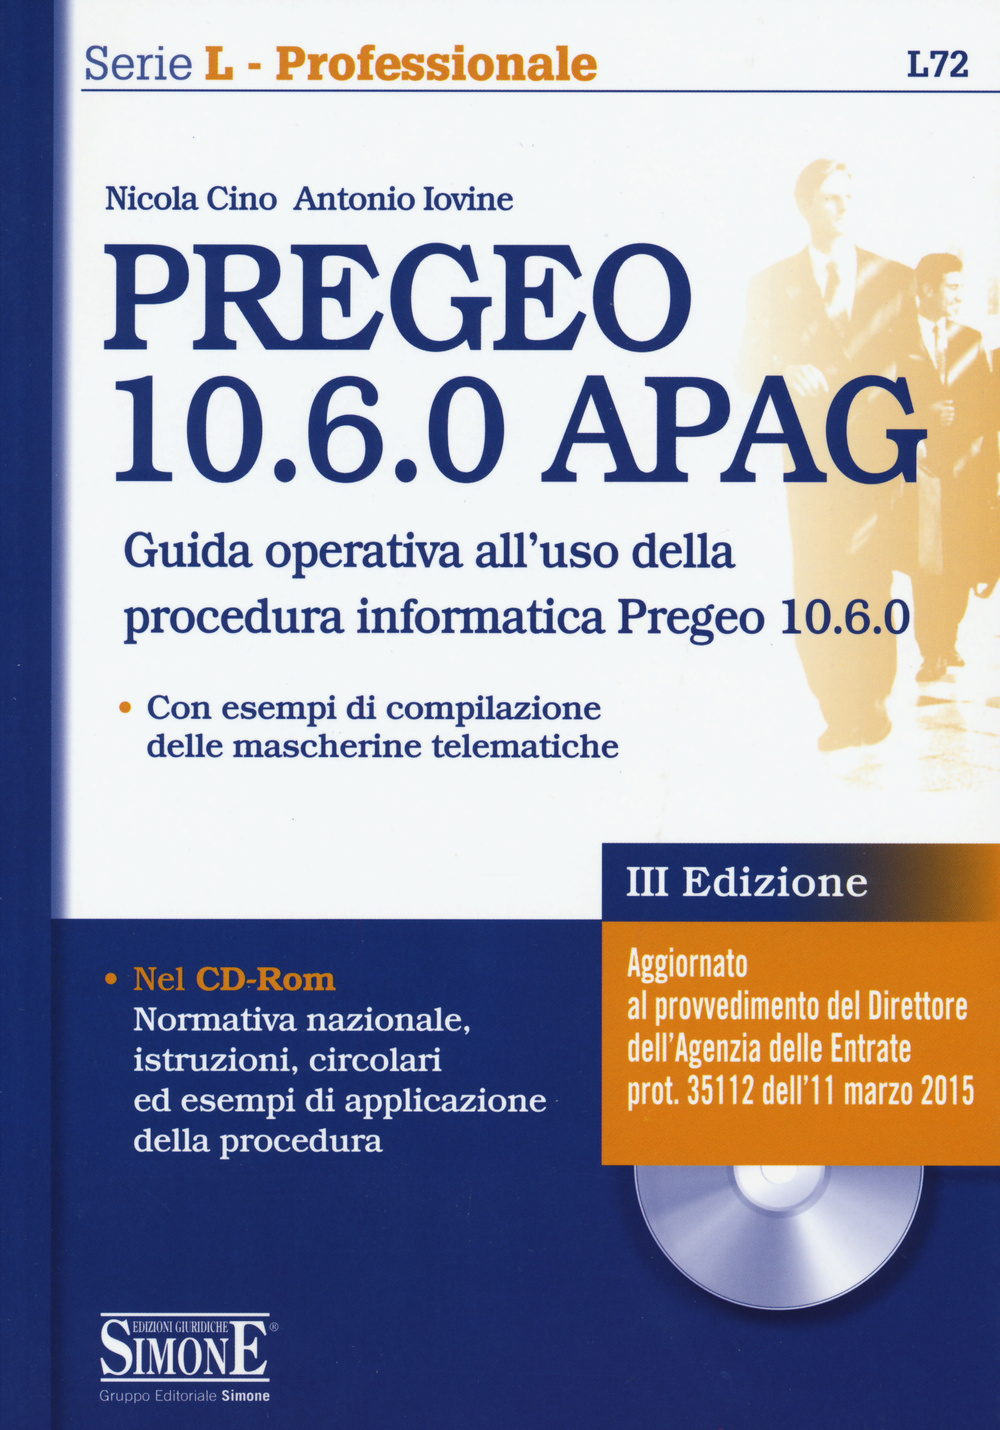 PREGEO 10.6.0 APAG. Con CD-ROM